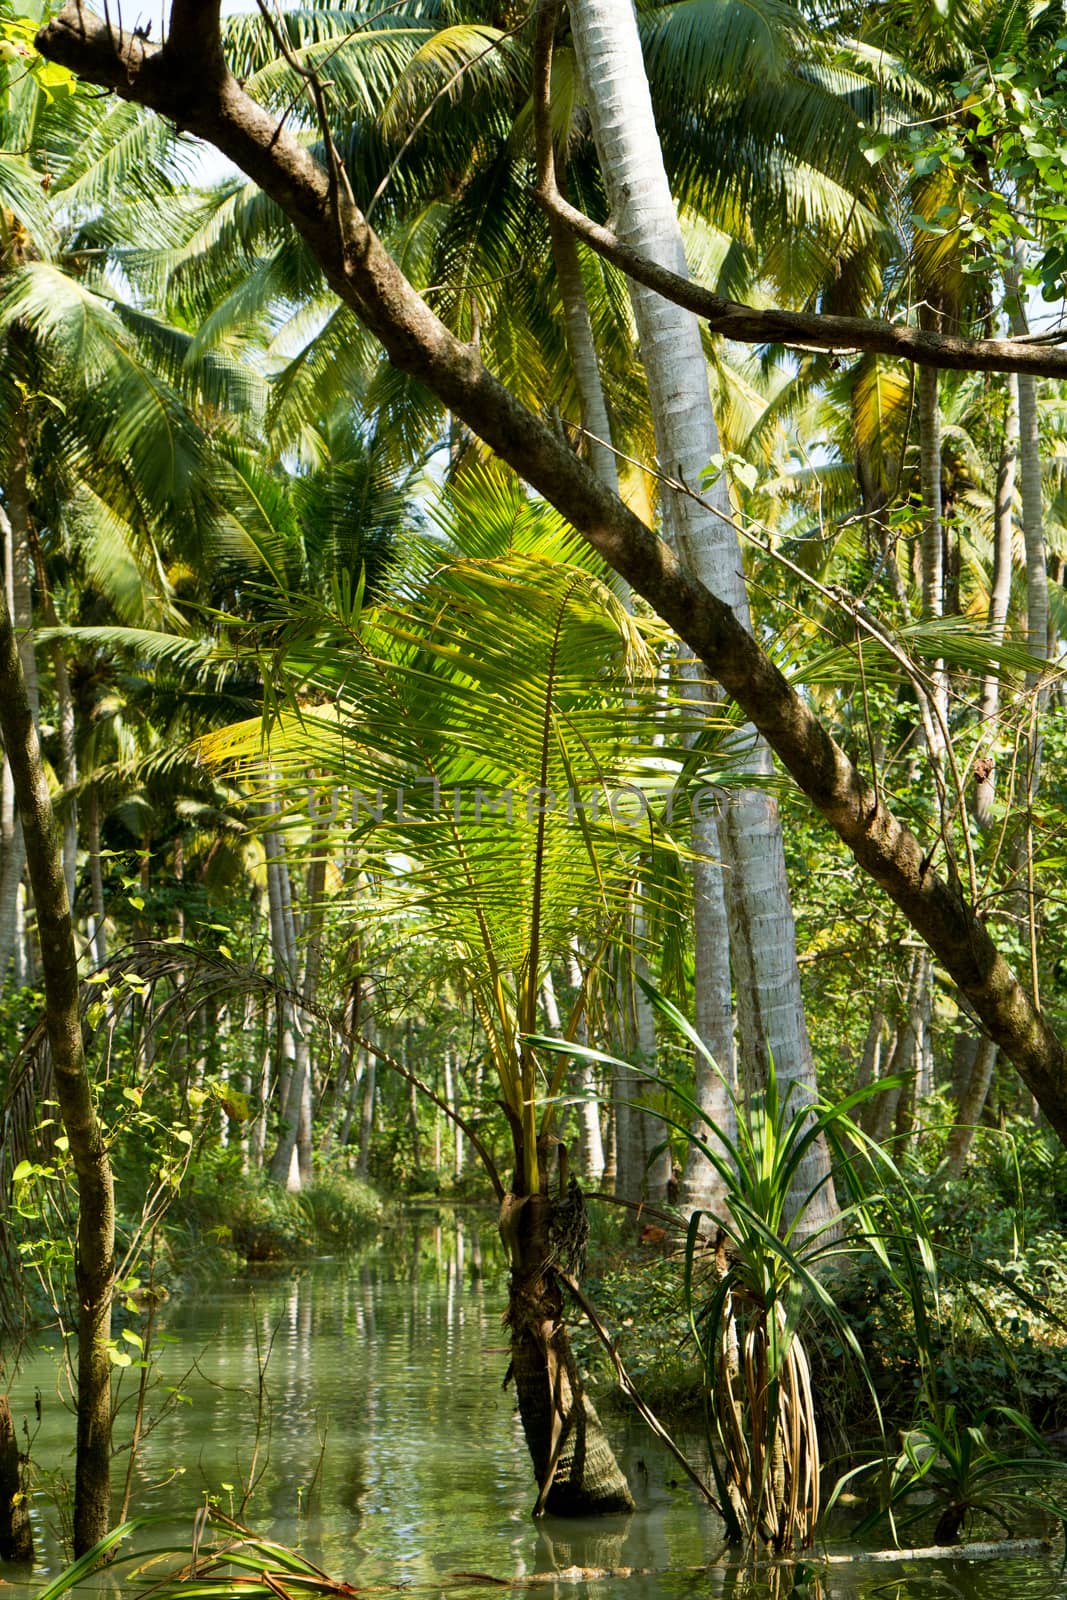 Kerala backwaters jungle (South India)